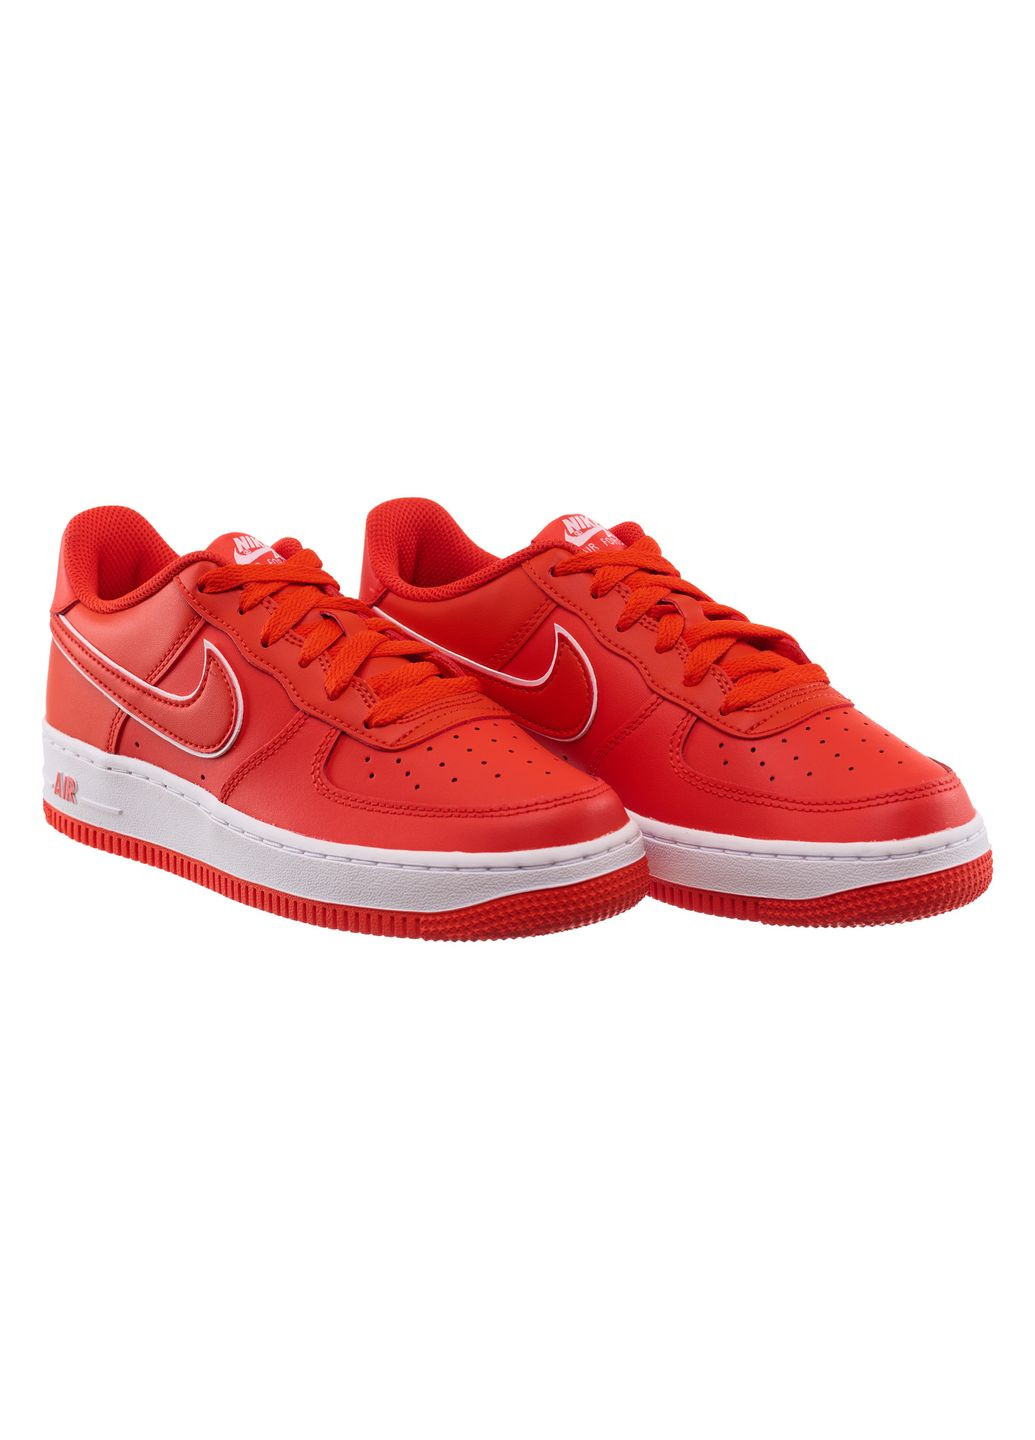 Красные демисезонные кроссовки подростковые air force 1 (gs) (dx5805-600) Nike